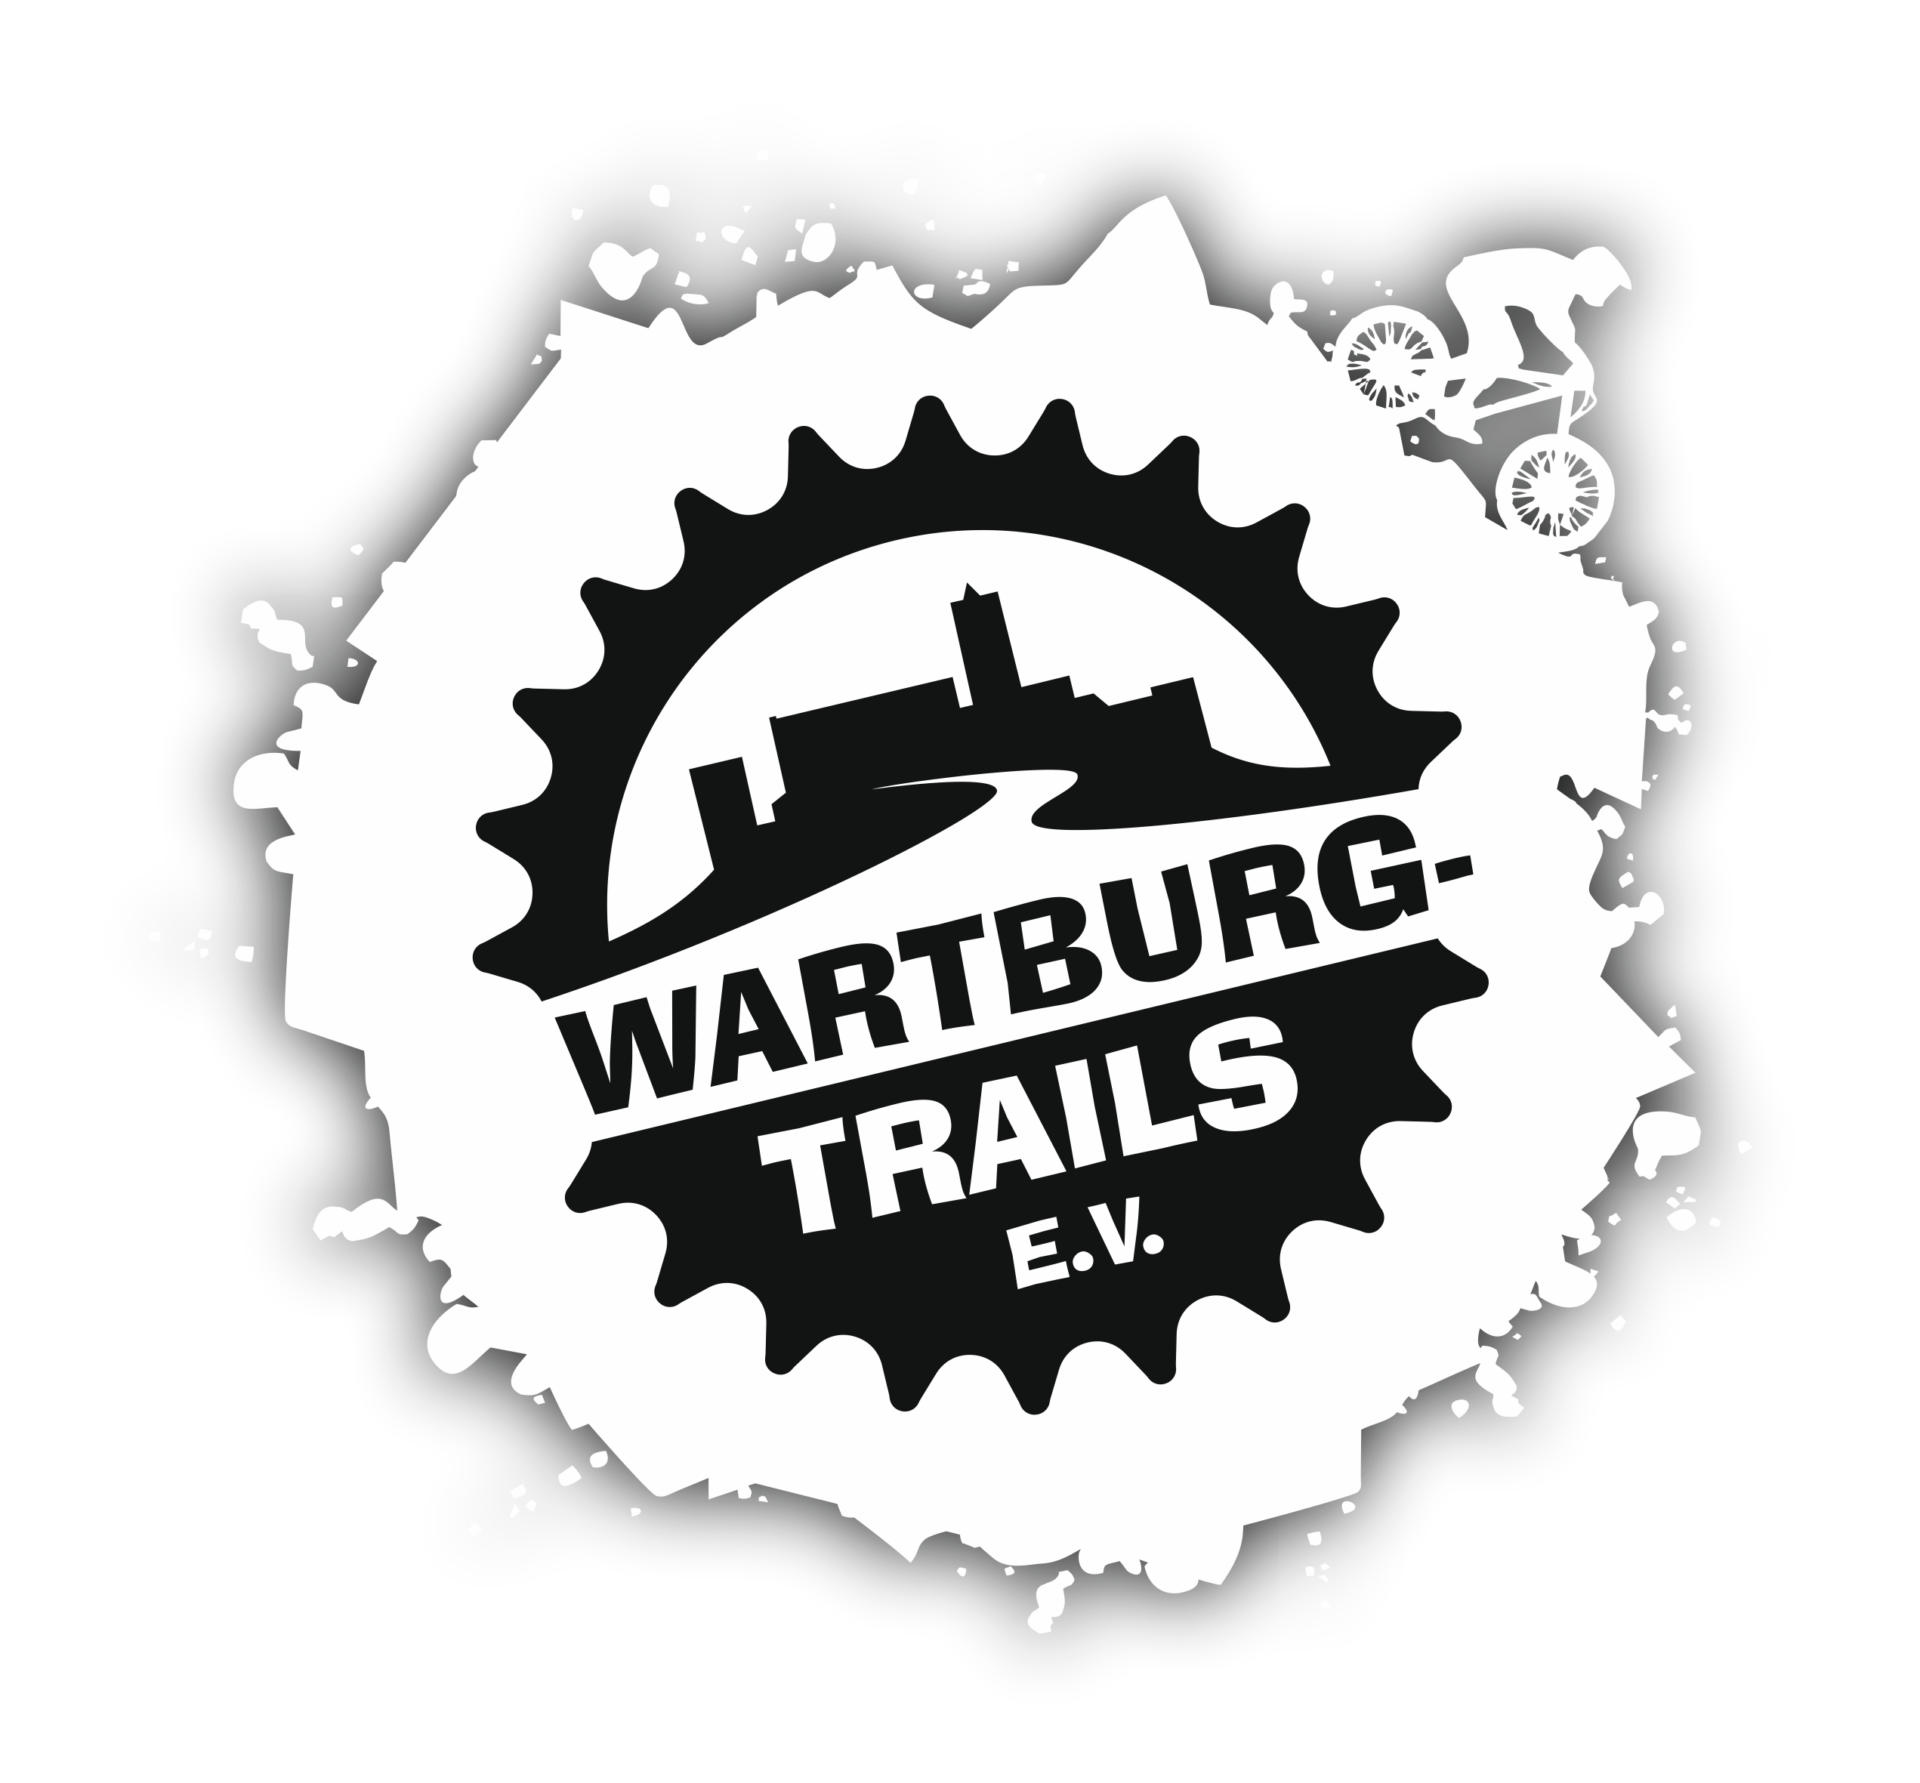 Wartburg Trails Eisenach